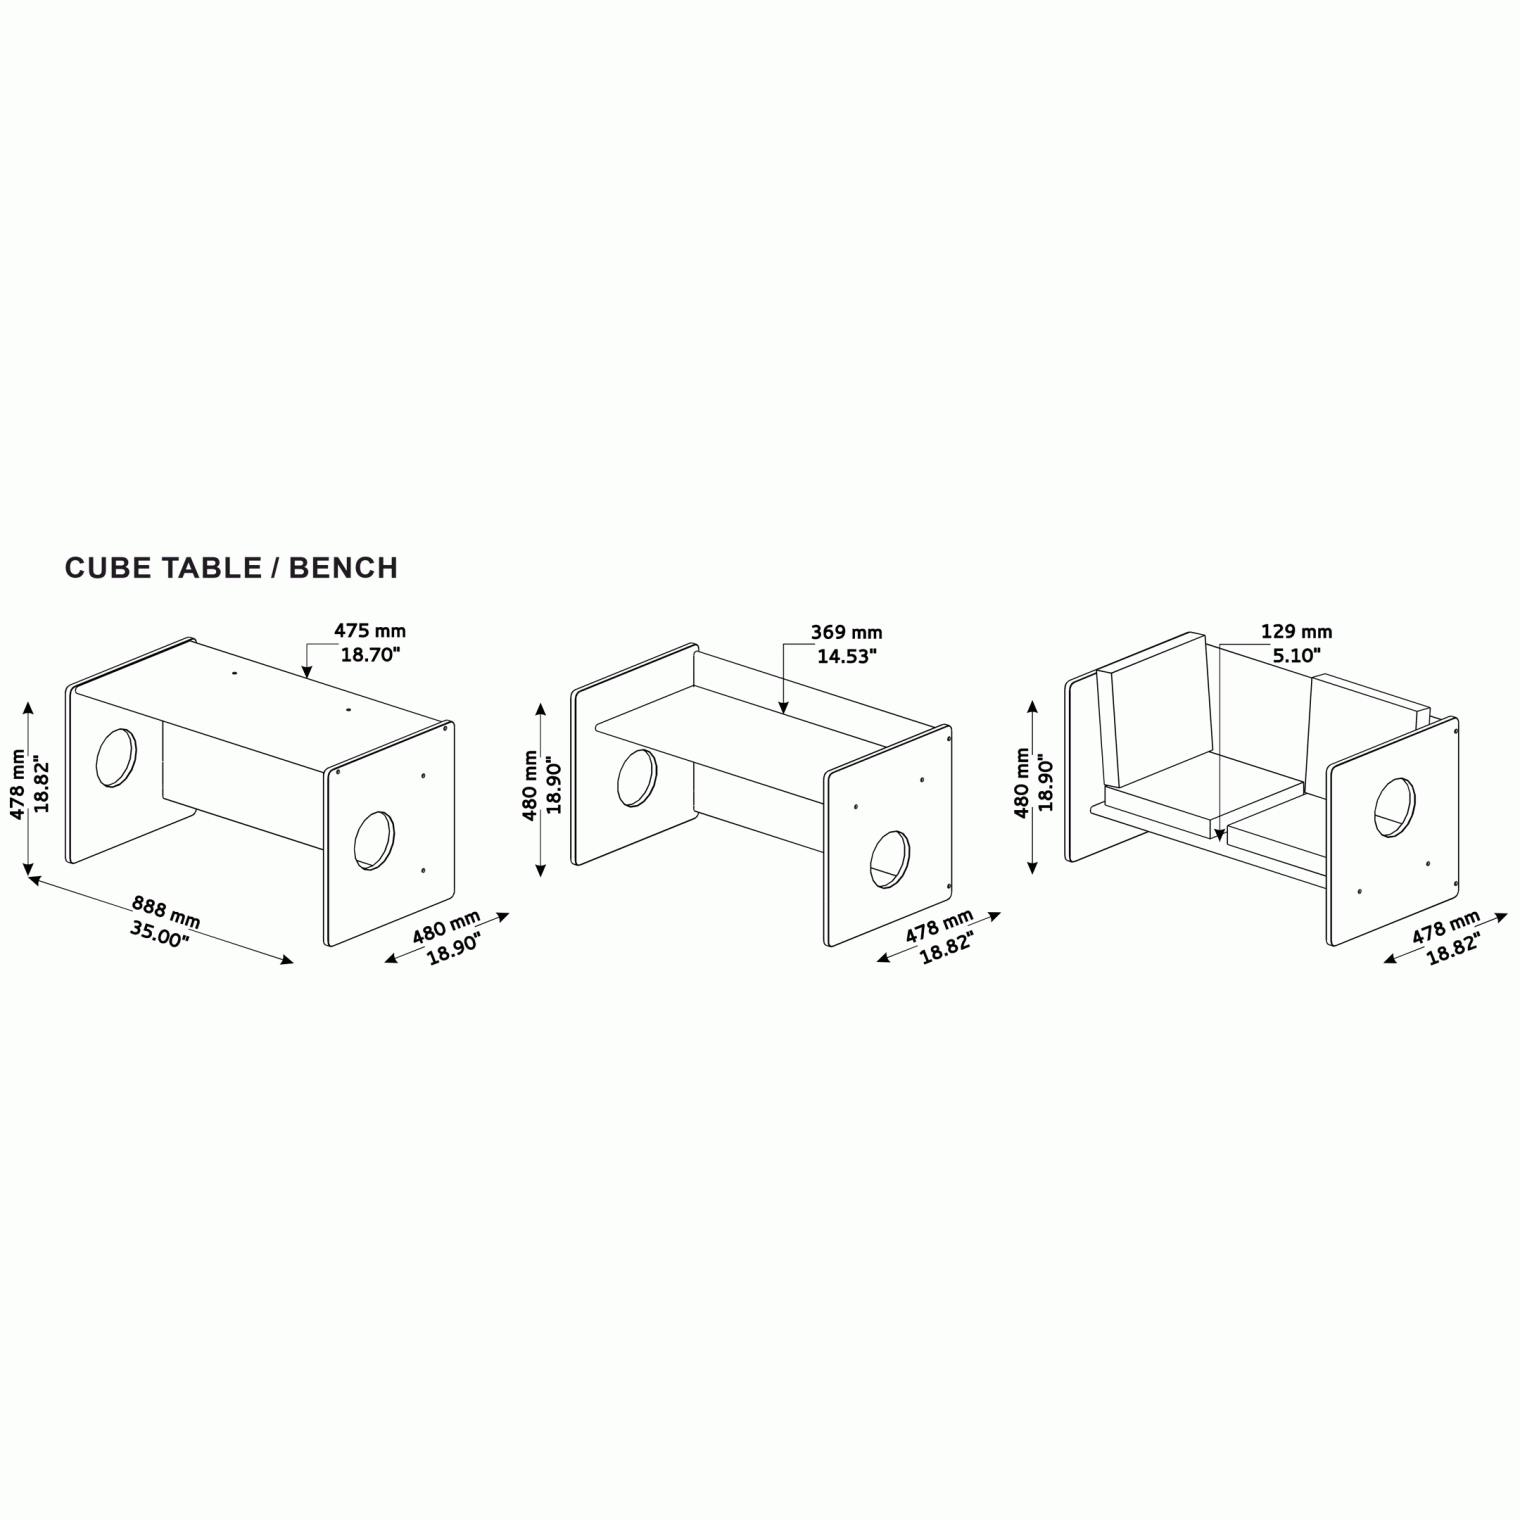 Montessori cube table dimensions